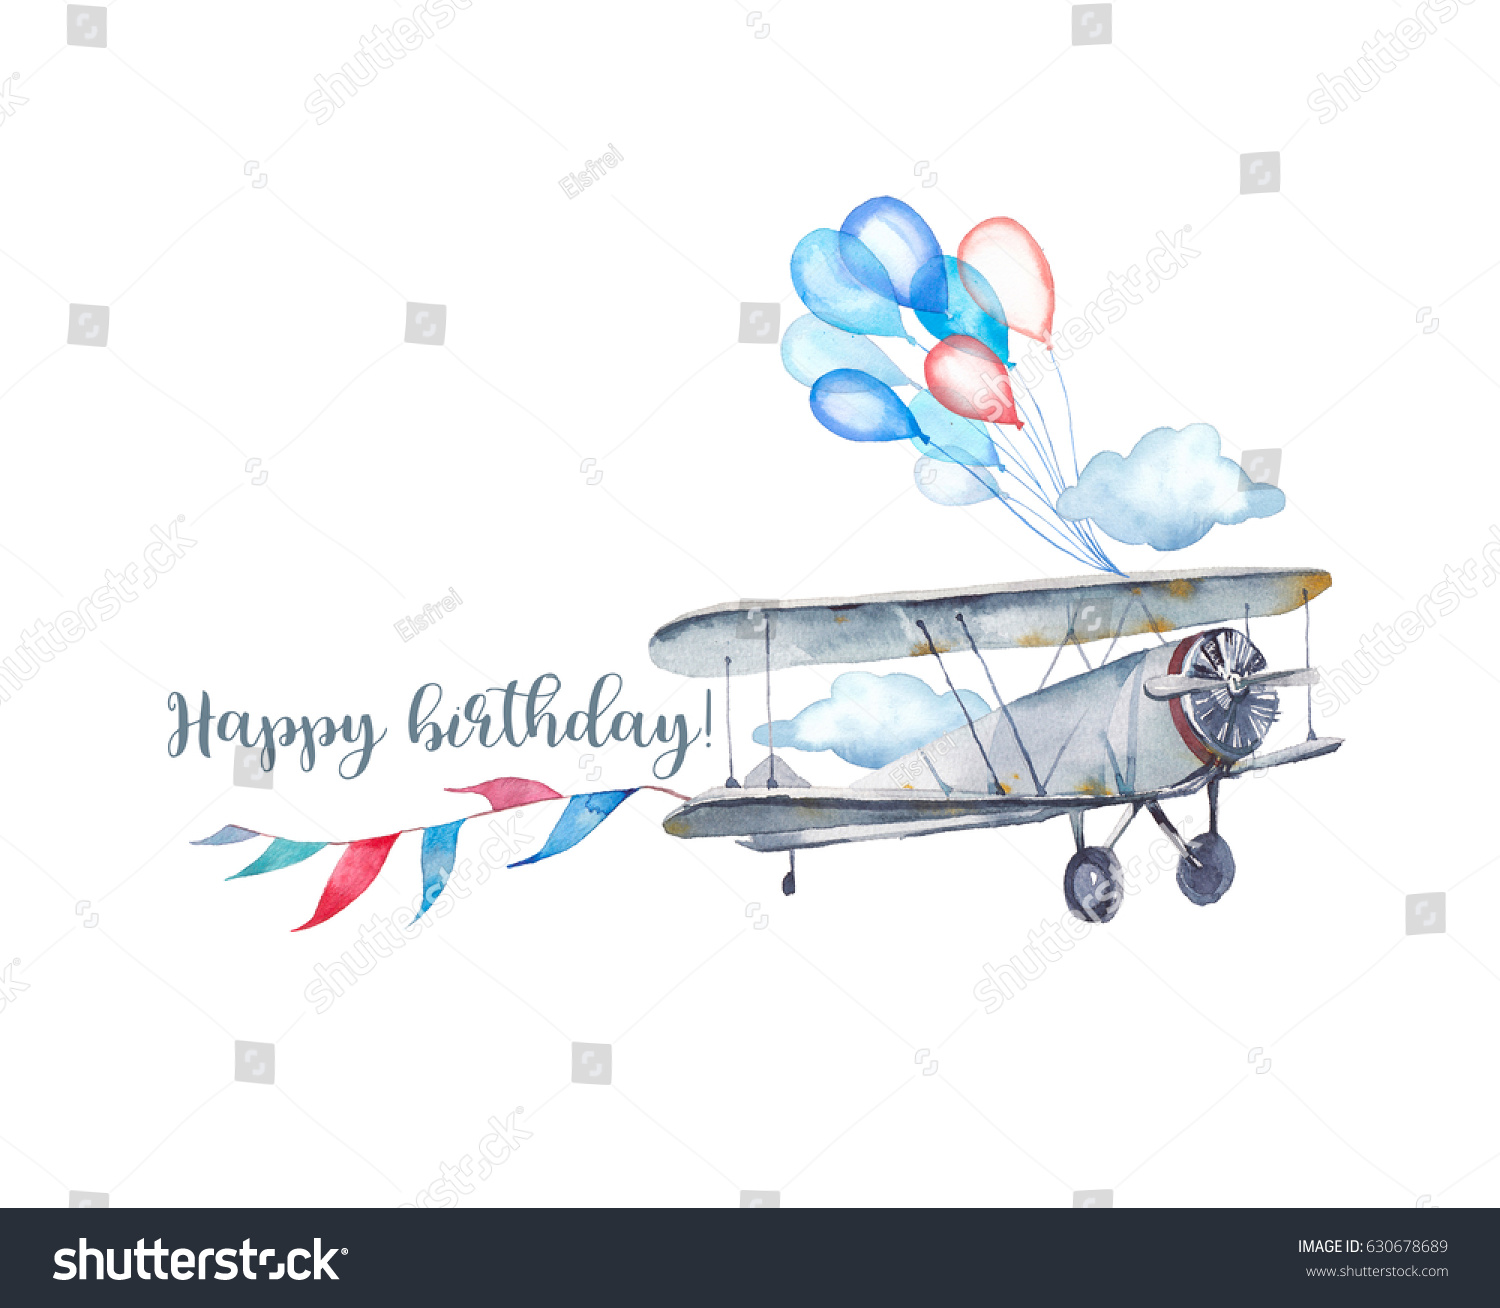 3,273 рез. по запросу "Happy birthday airplane" - изображения, ст...